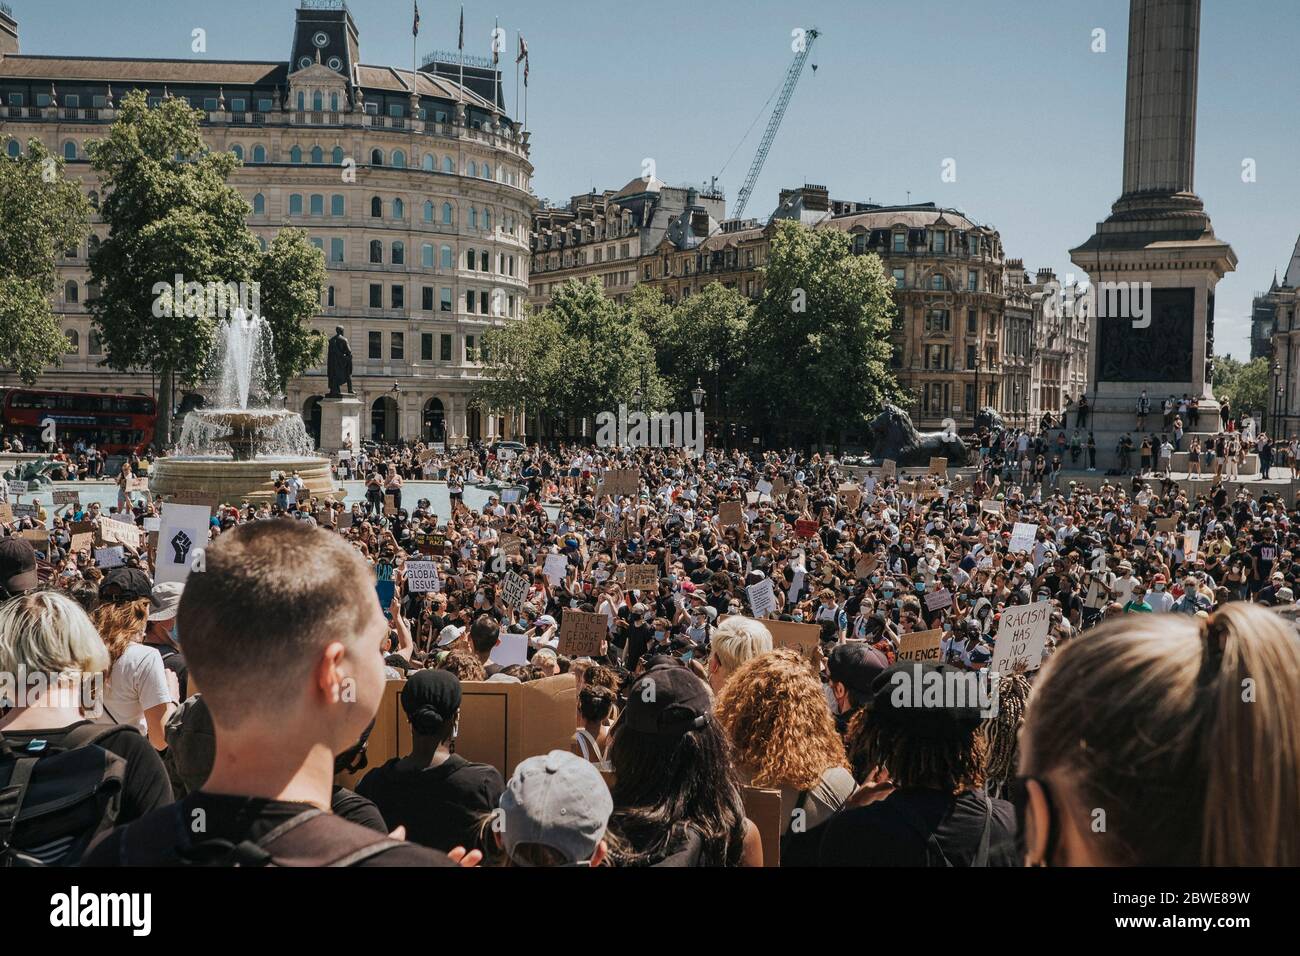 Vidas negras importan protestas la gente participa en una protesta en memoria de George Floyd en Trafalgar Square en Londres, domingo 31 de mayo de 2020 Foto de stock